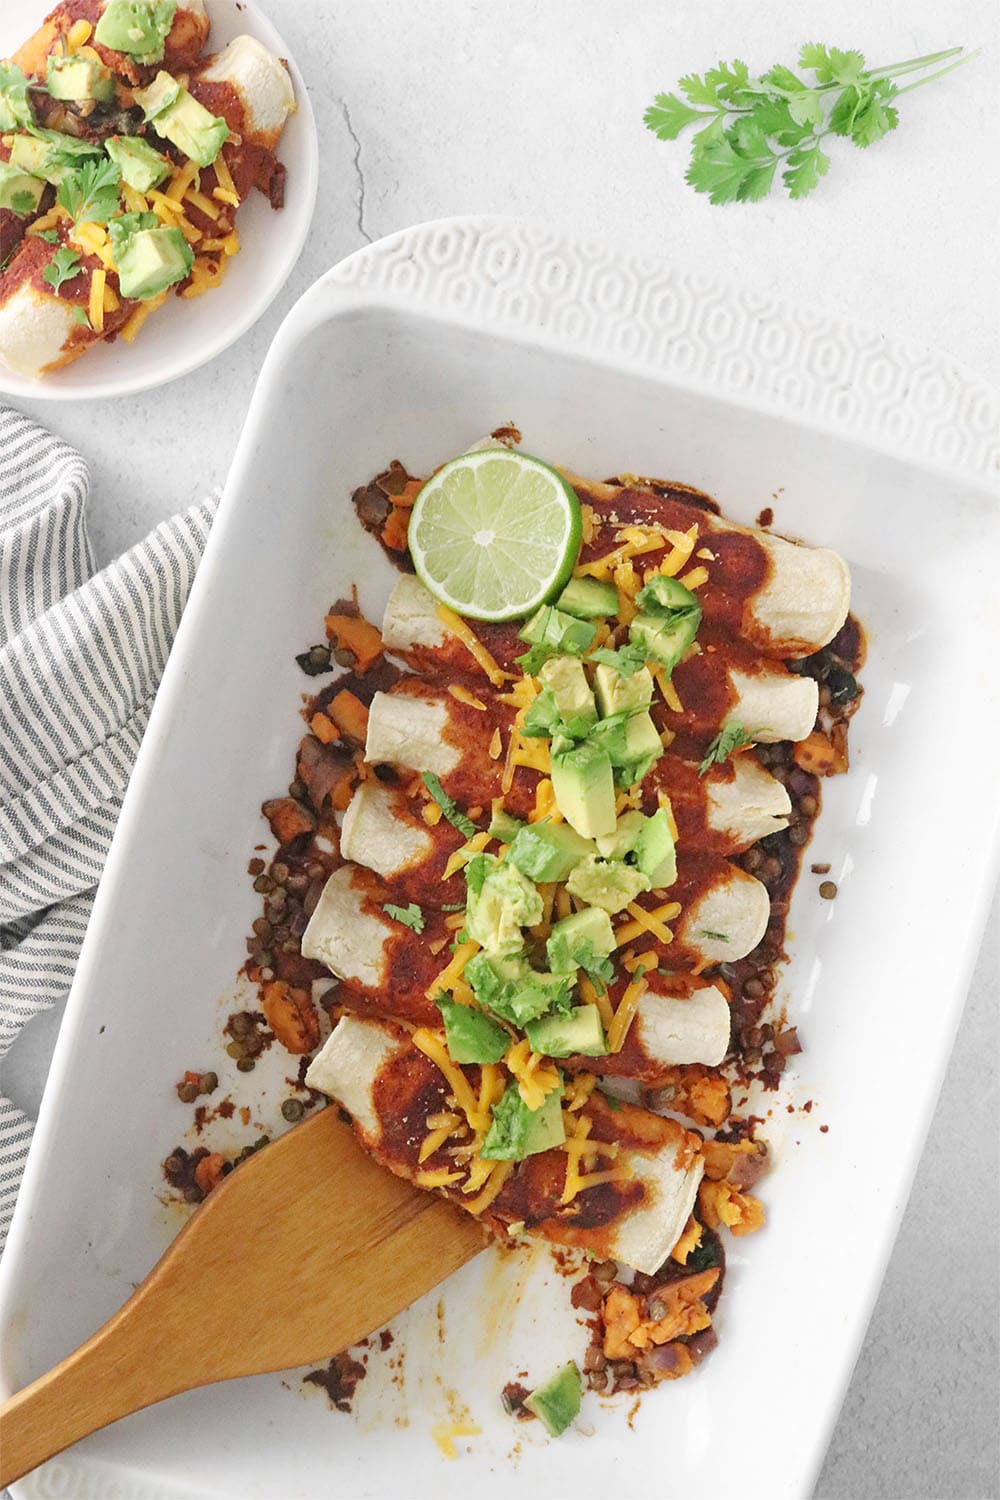 Vegan Enchiladas